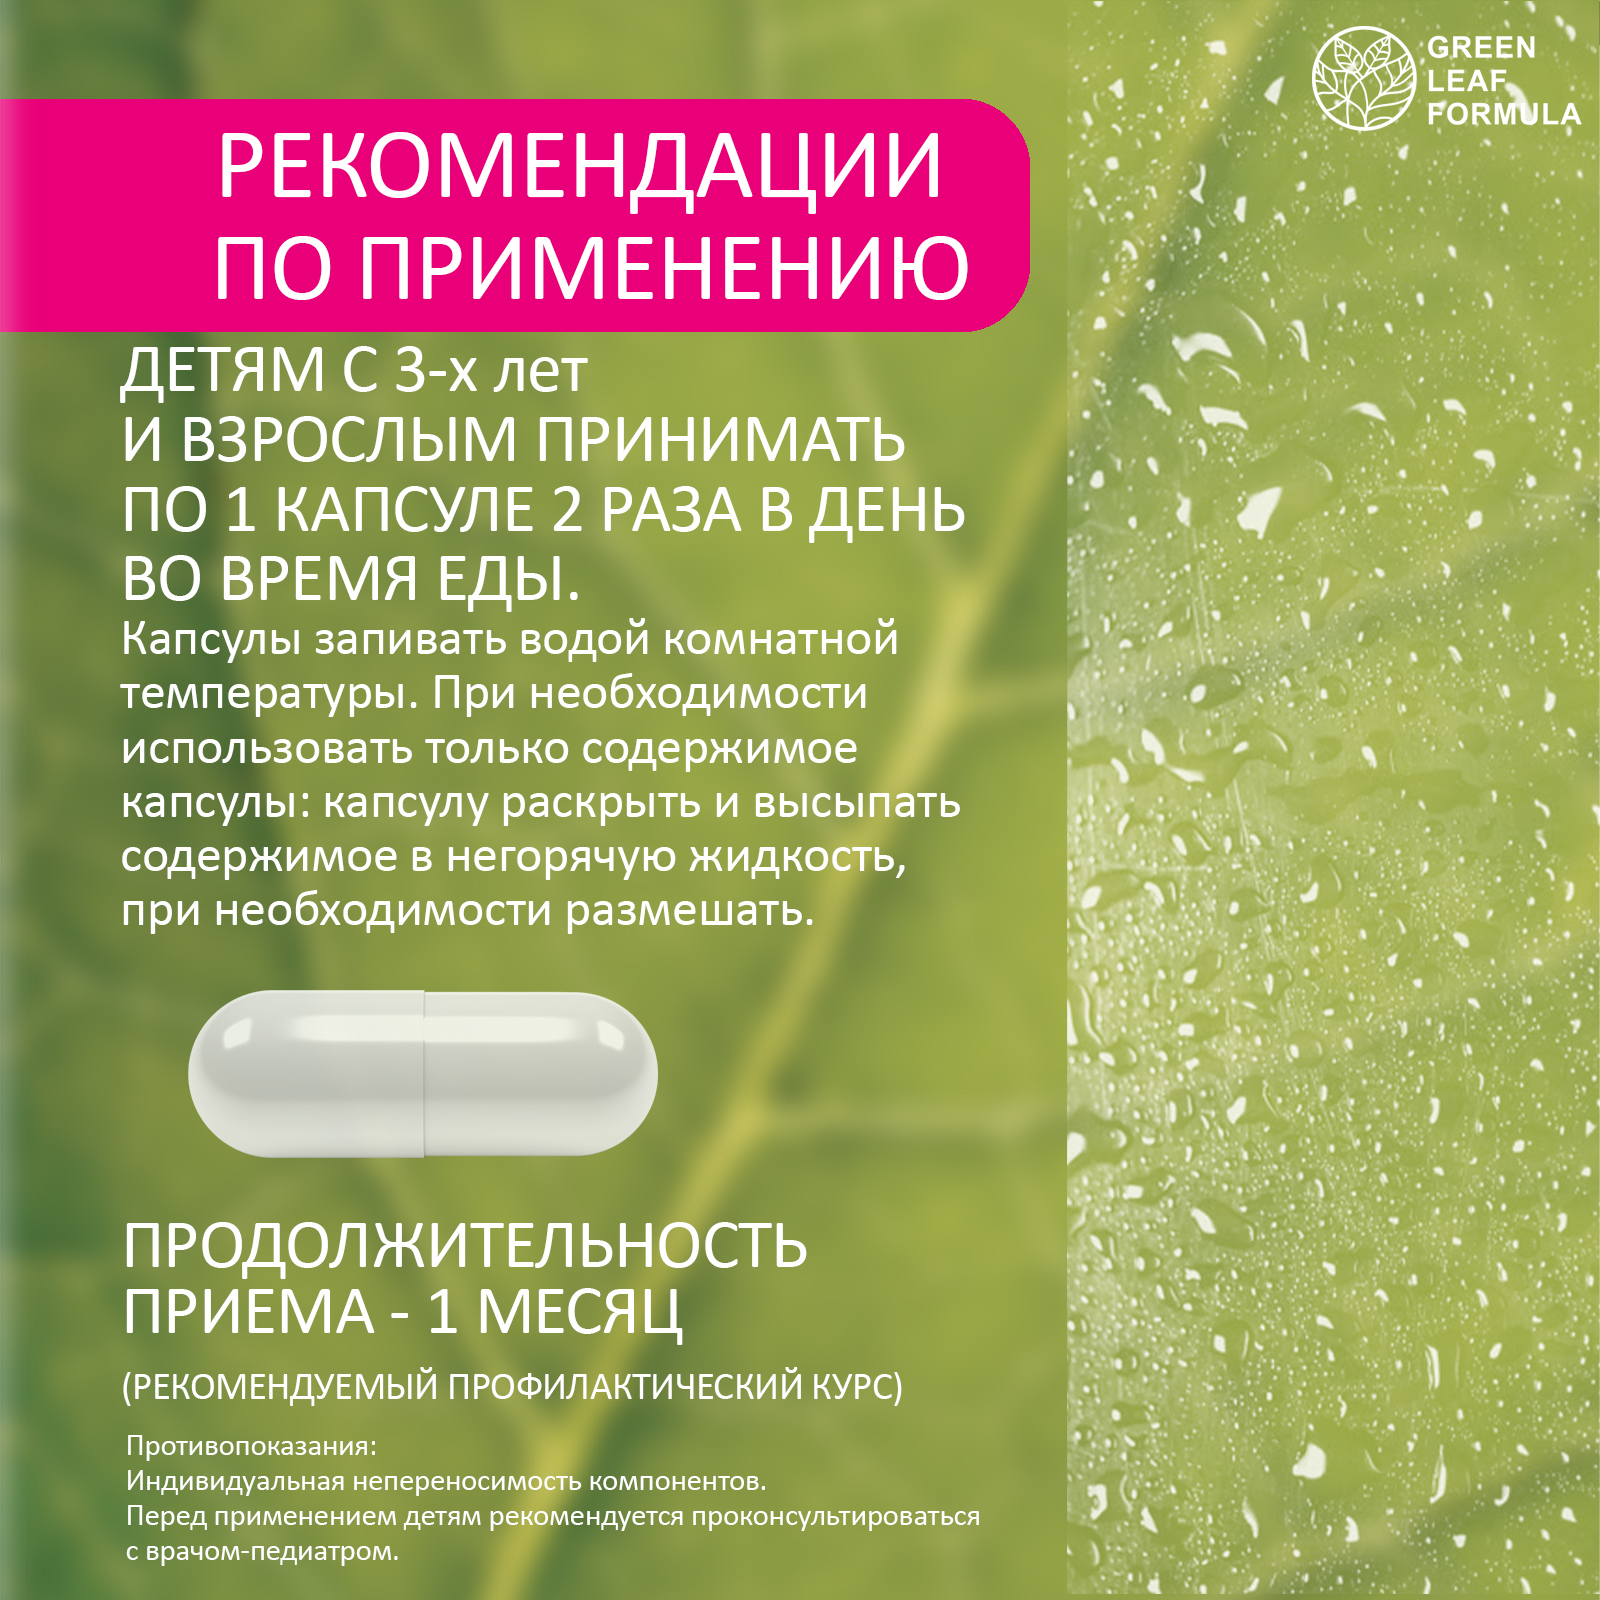 Детский пробиотик и витамины Green Leaf Formula мультивитамины для детей от 3 лет для иммунитета для кишечника - фото 10